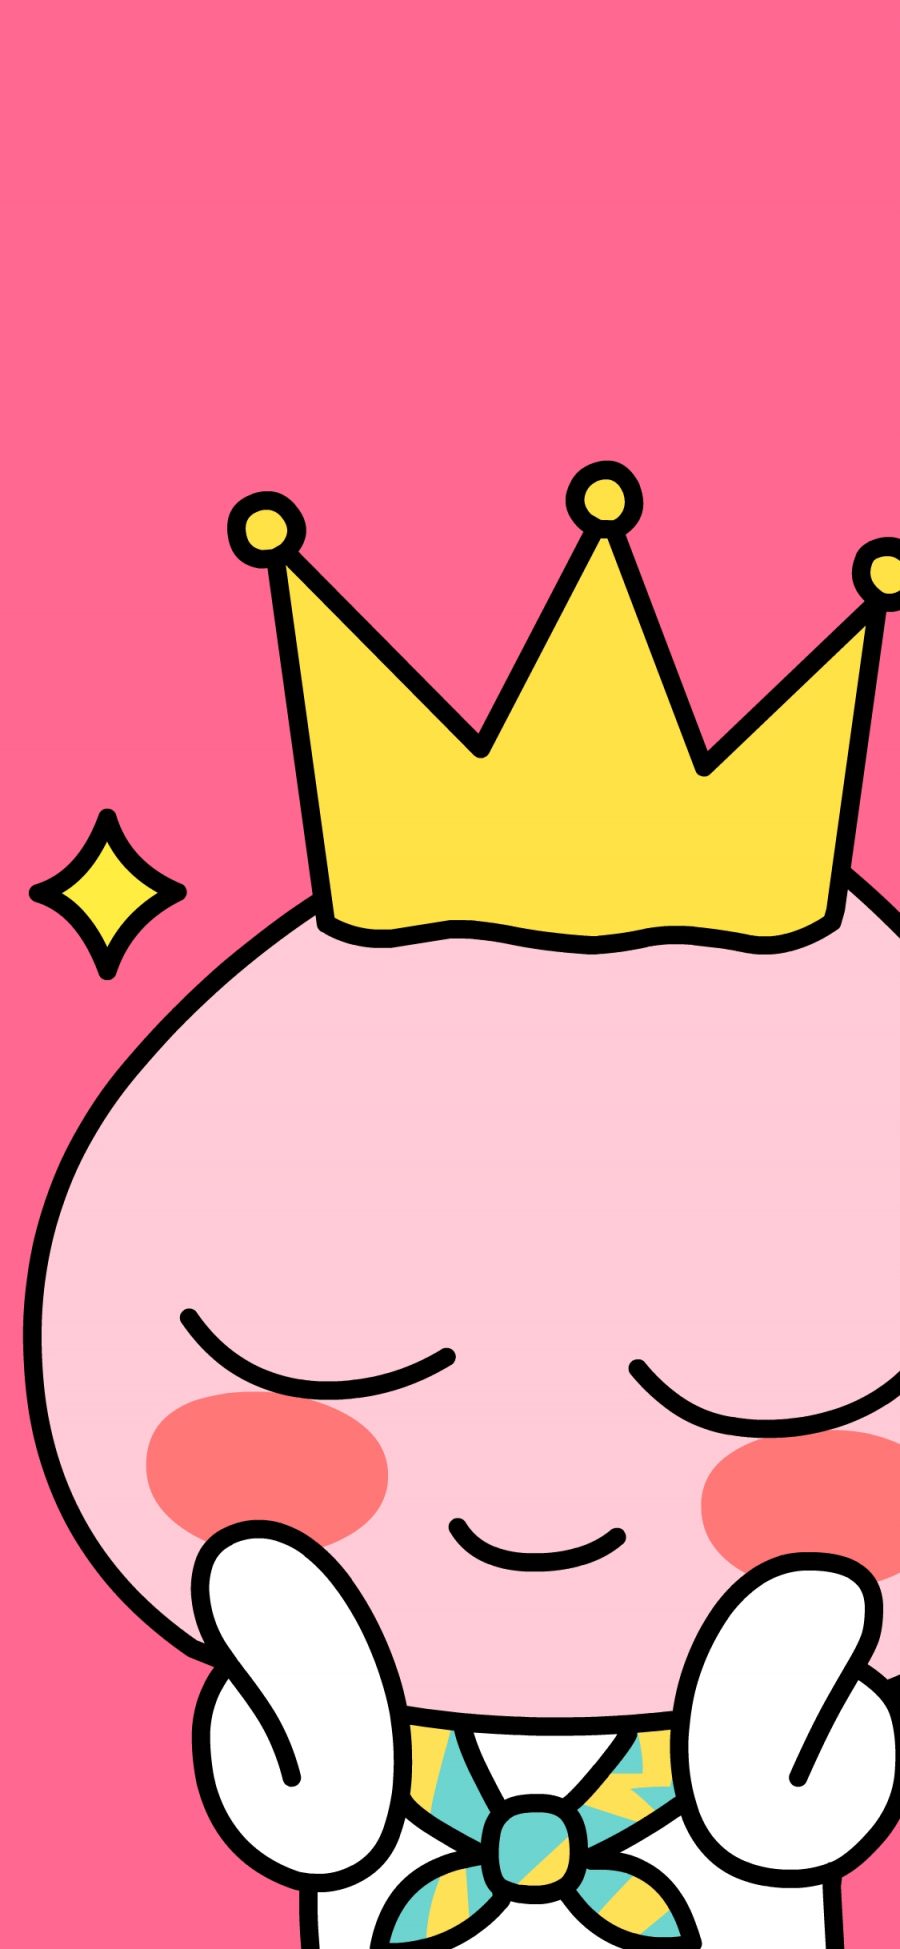 [2436×1125]皇冠 卡通 可爱 粉色 害羞 苹果手机动漫壁纸图片